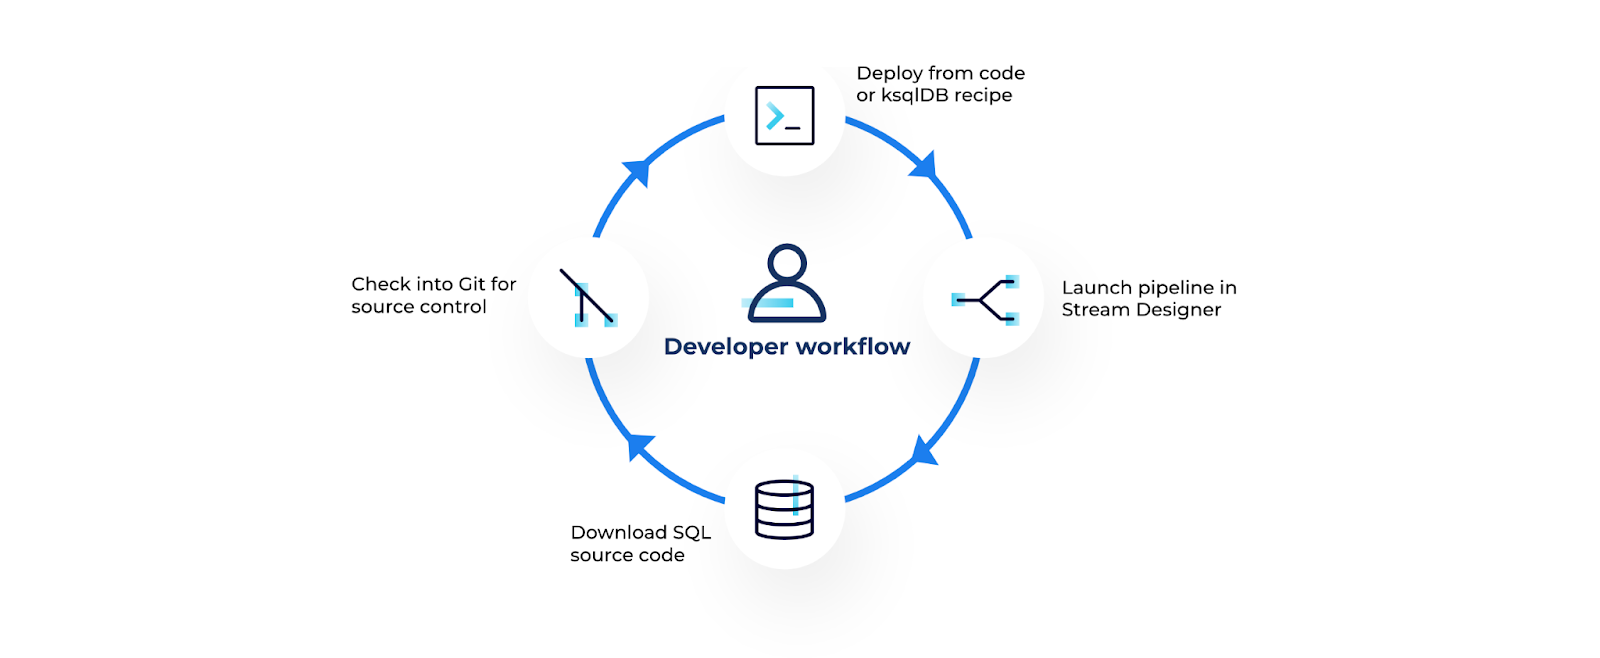 Stream Designer within your current DevOps workflow